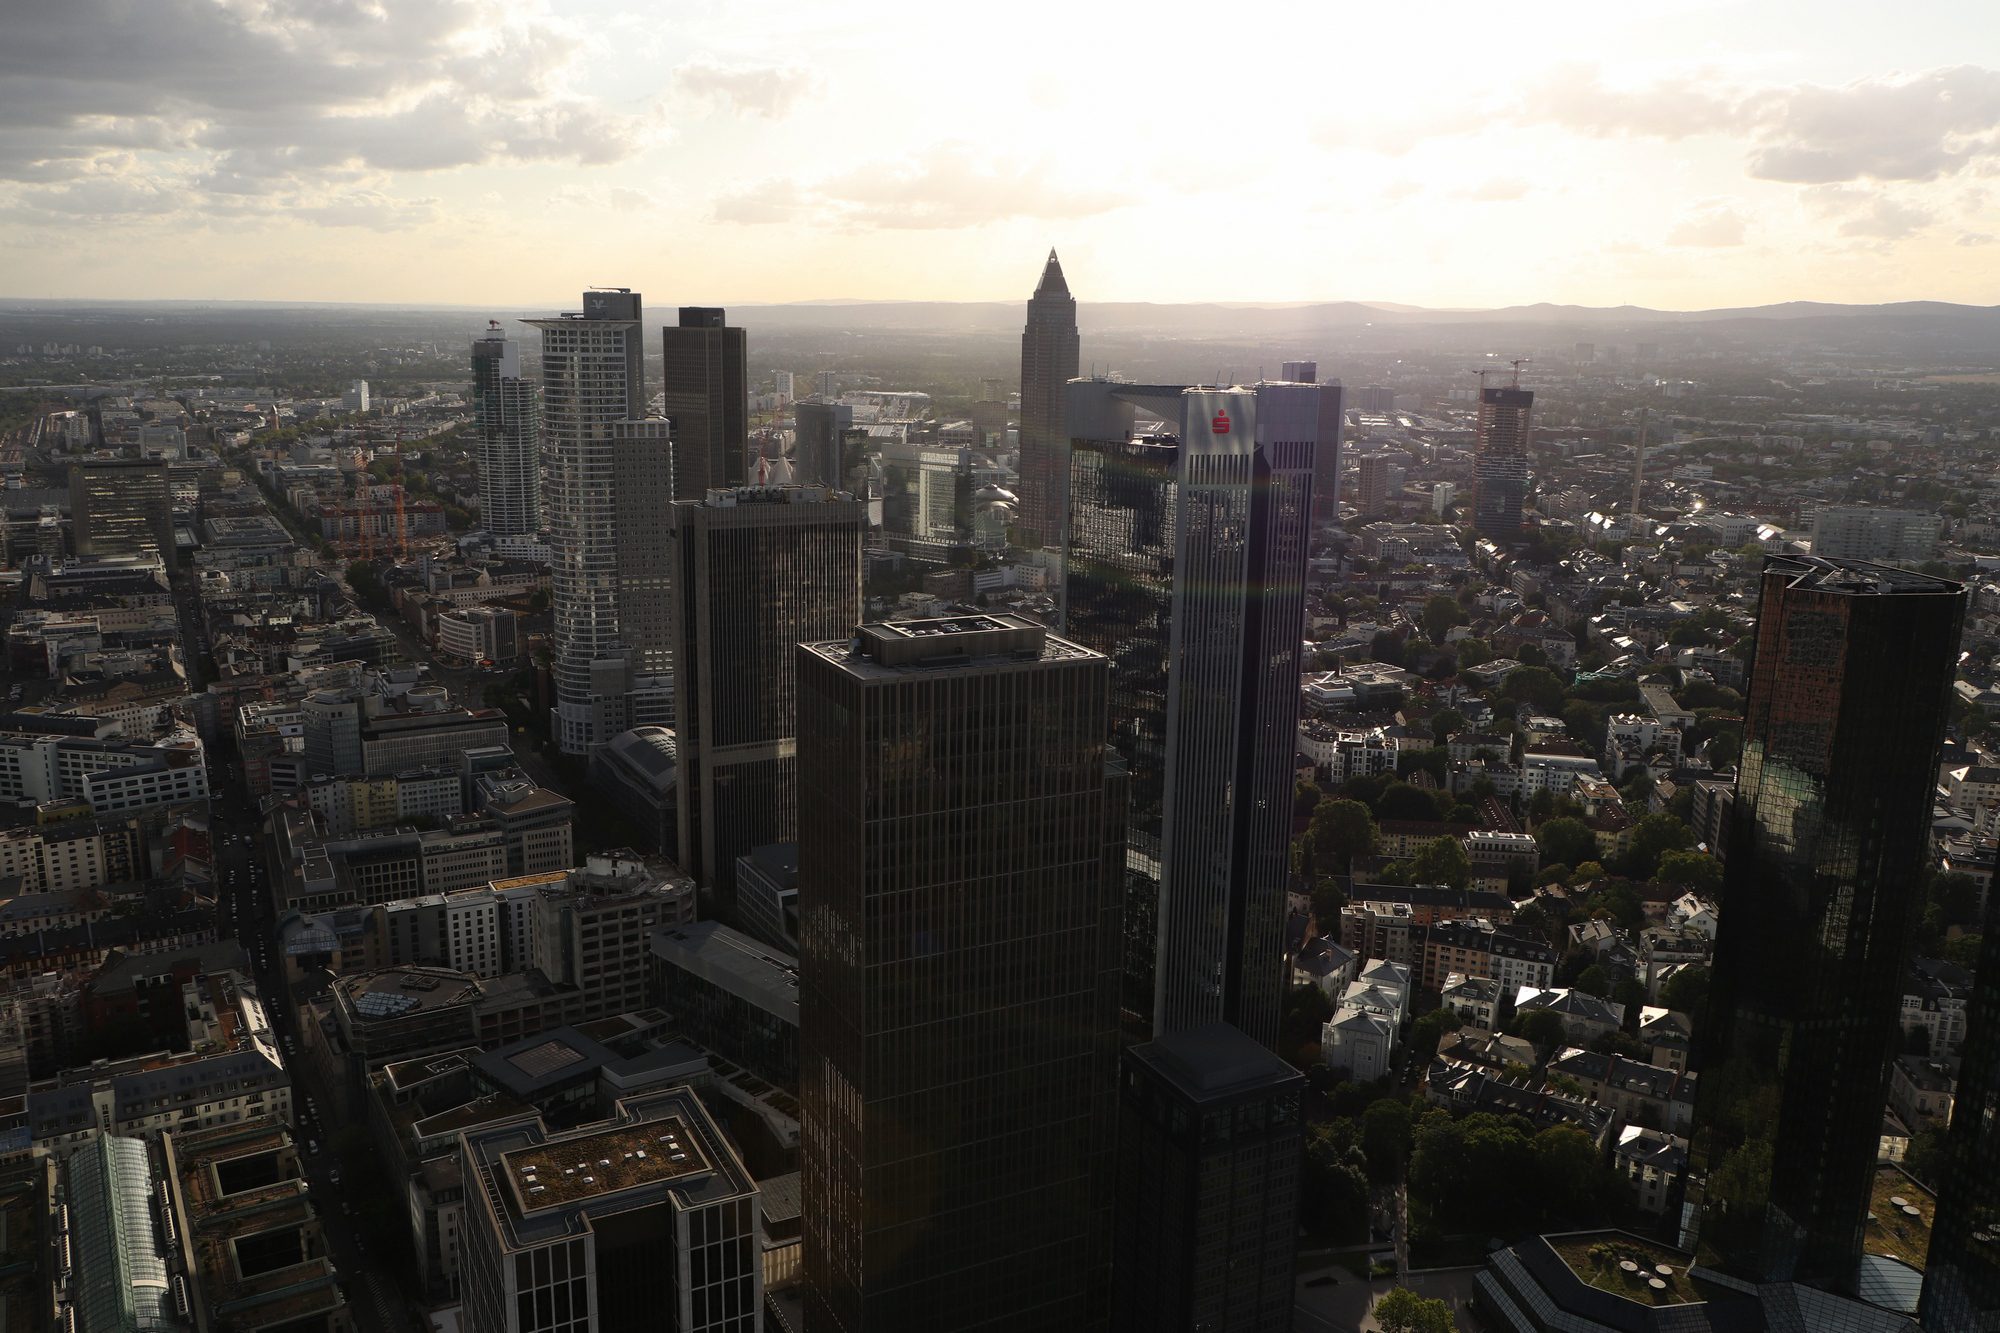 Bankenviertel in Frankfurt am Main vom Main-Tower aus